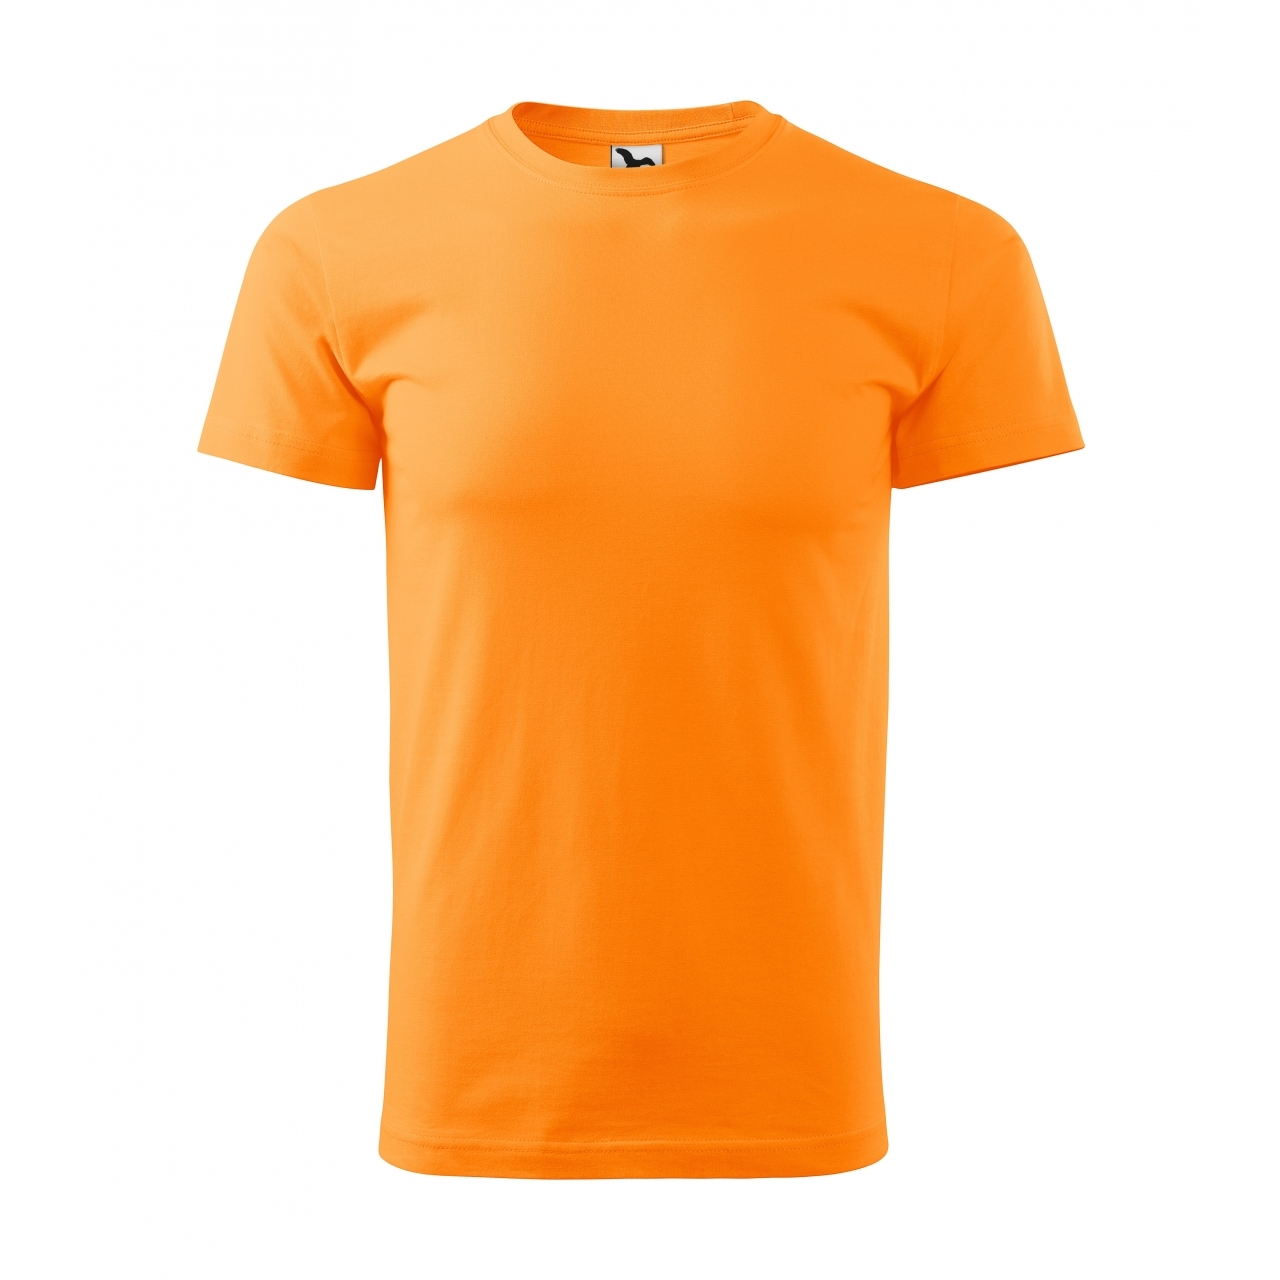 Triko pánské Malfini Basic - světle oranžové, XL